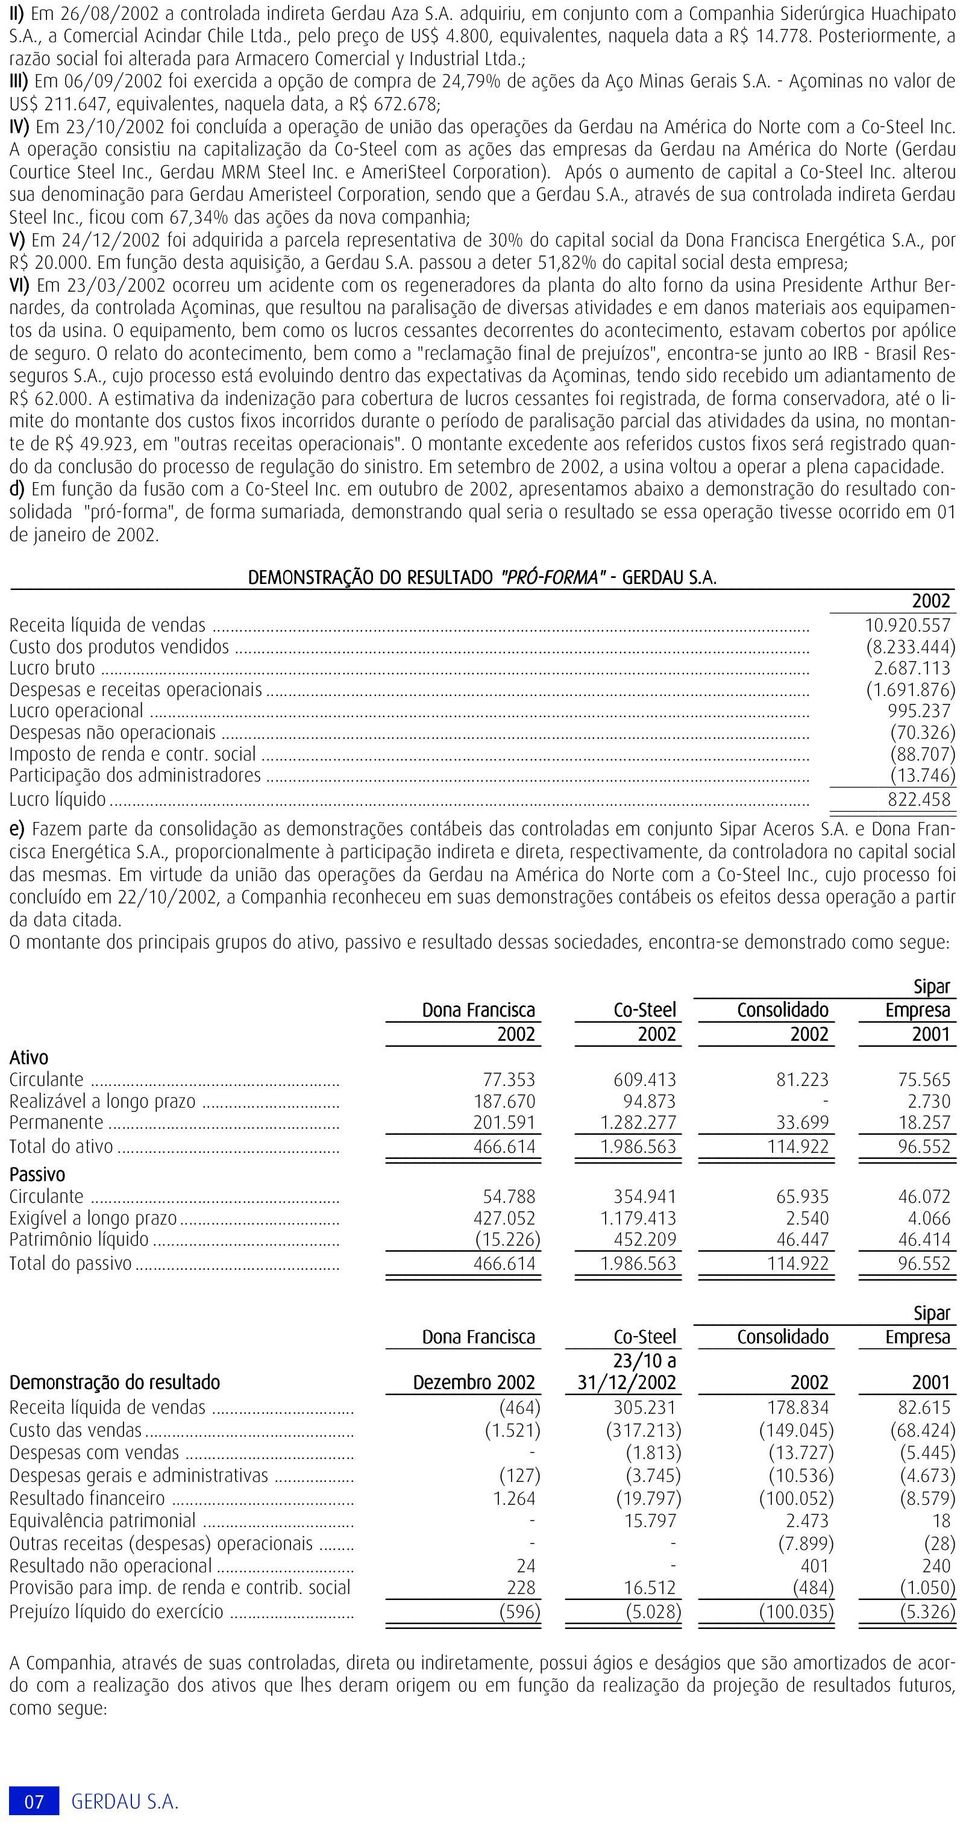 ; III) Em 06/09/2002 foi exercida a opção de compra de 24,79% de ações da Aço Minas Gerais S.A. - Açominas no valor de US$ 211.647, equivalentes, naquela data, a R$ 672.